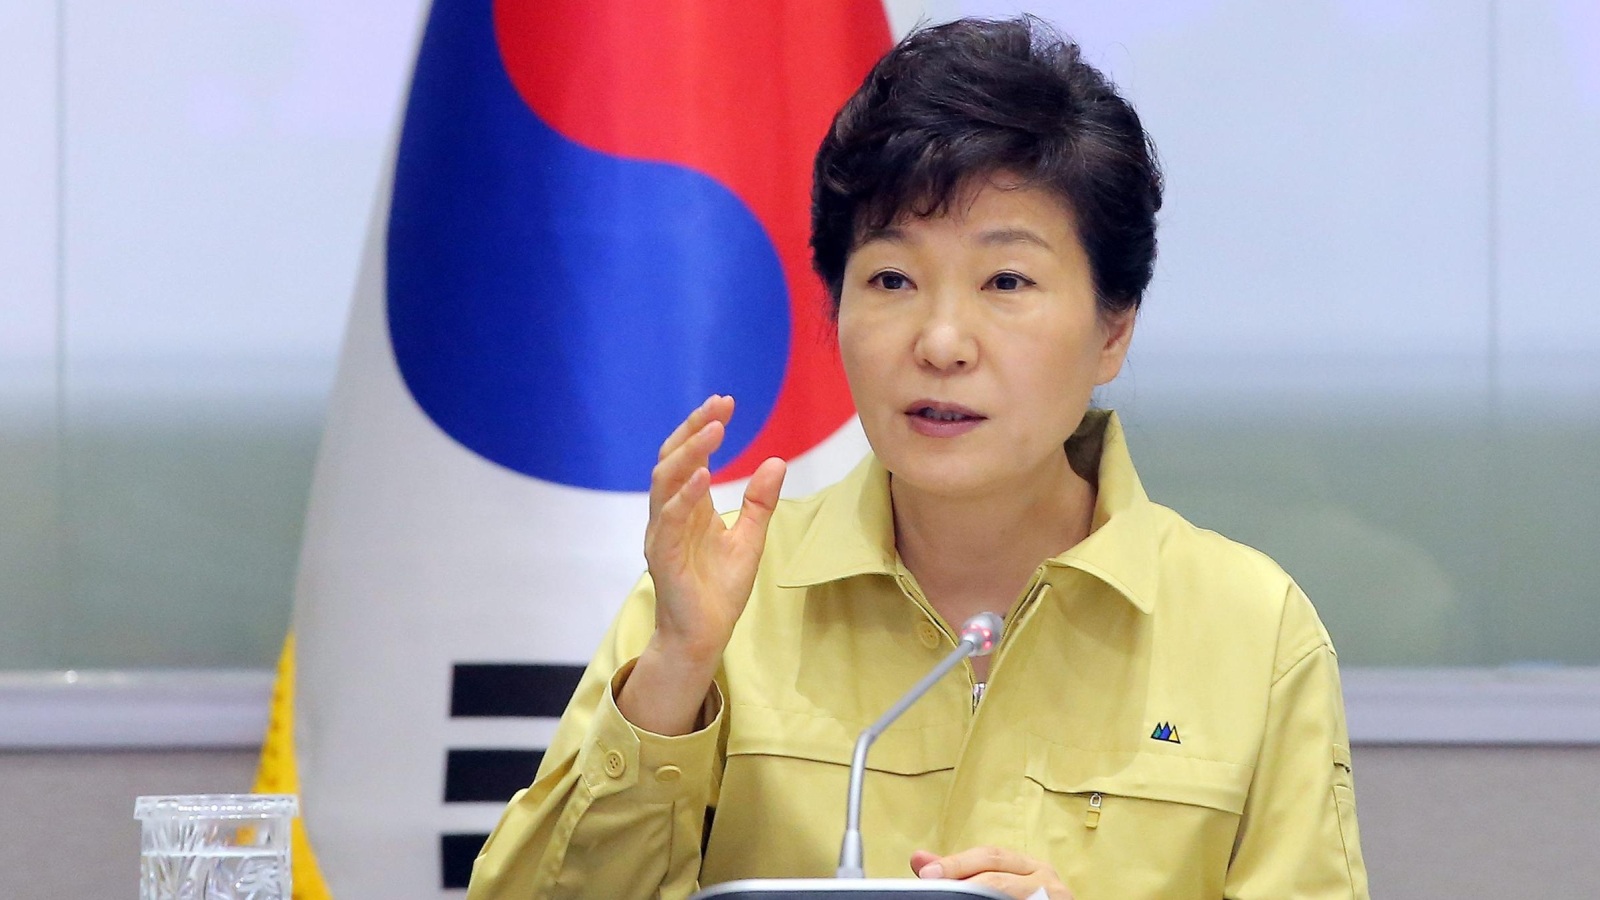 ‪رئيسة كوريا الجنوبية بارك كون هيه أكدت أن الدولة ستبذل أقصى جهد للحد من تفشي كورونا‬  (الأوروبية)